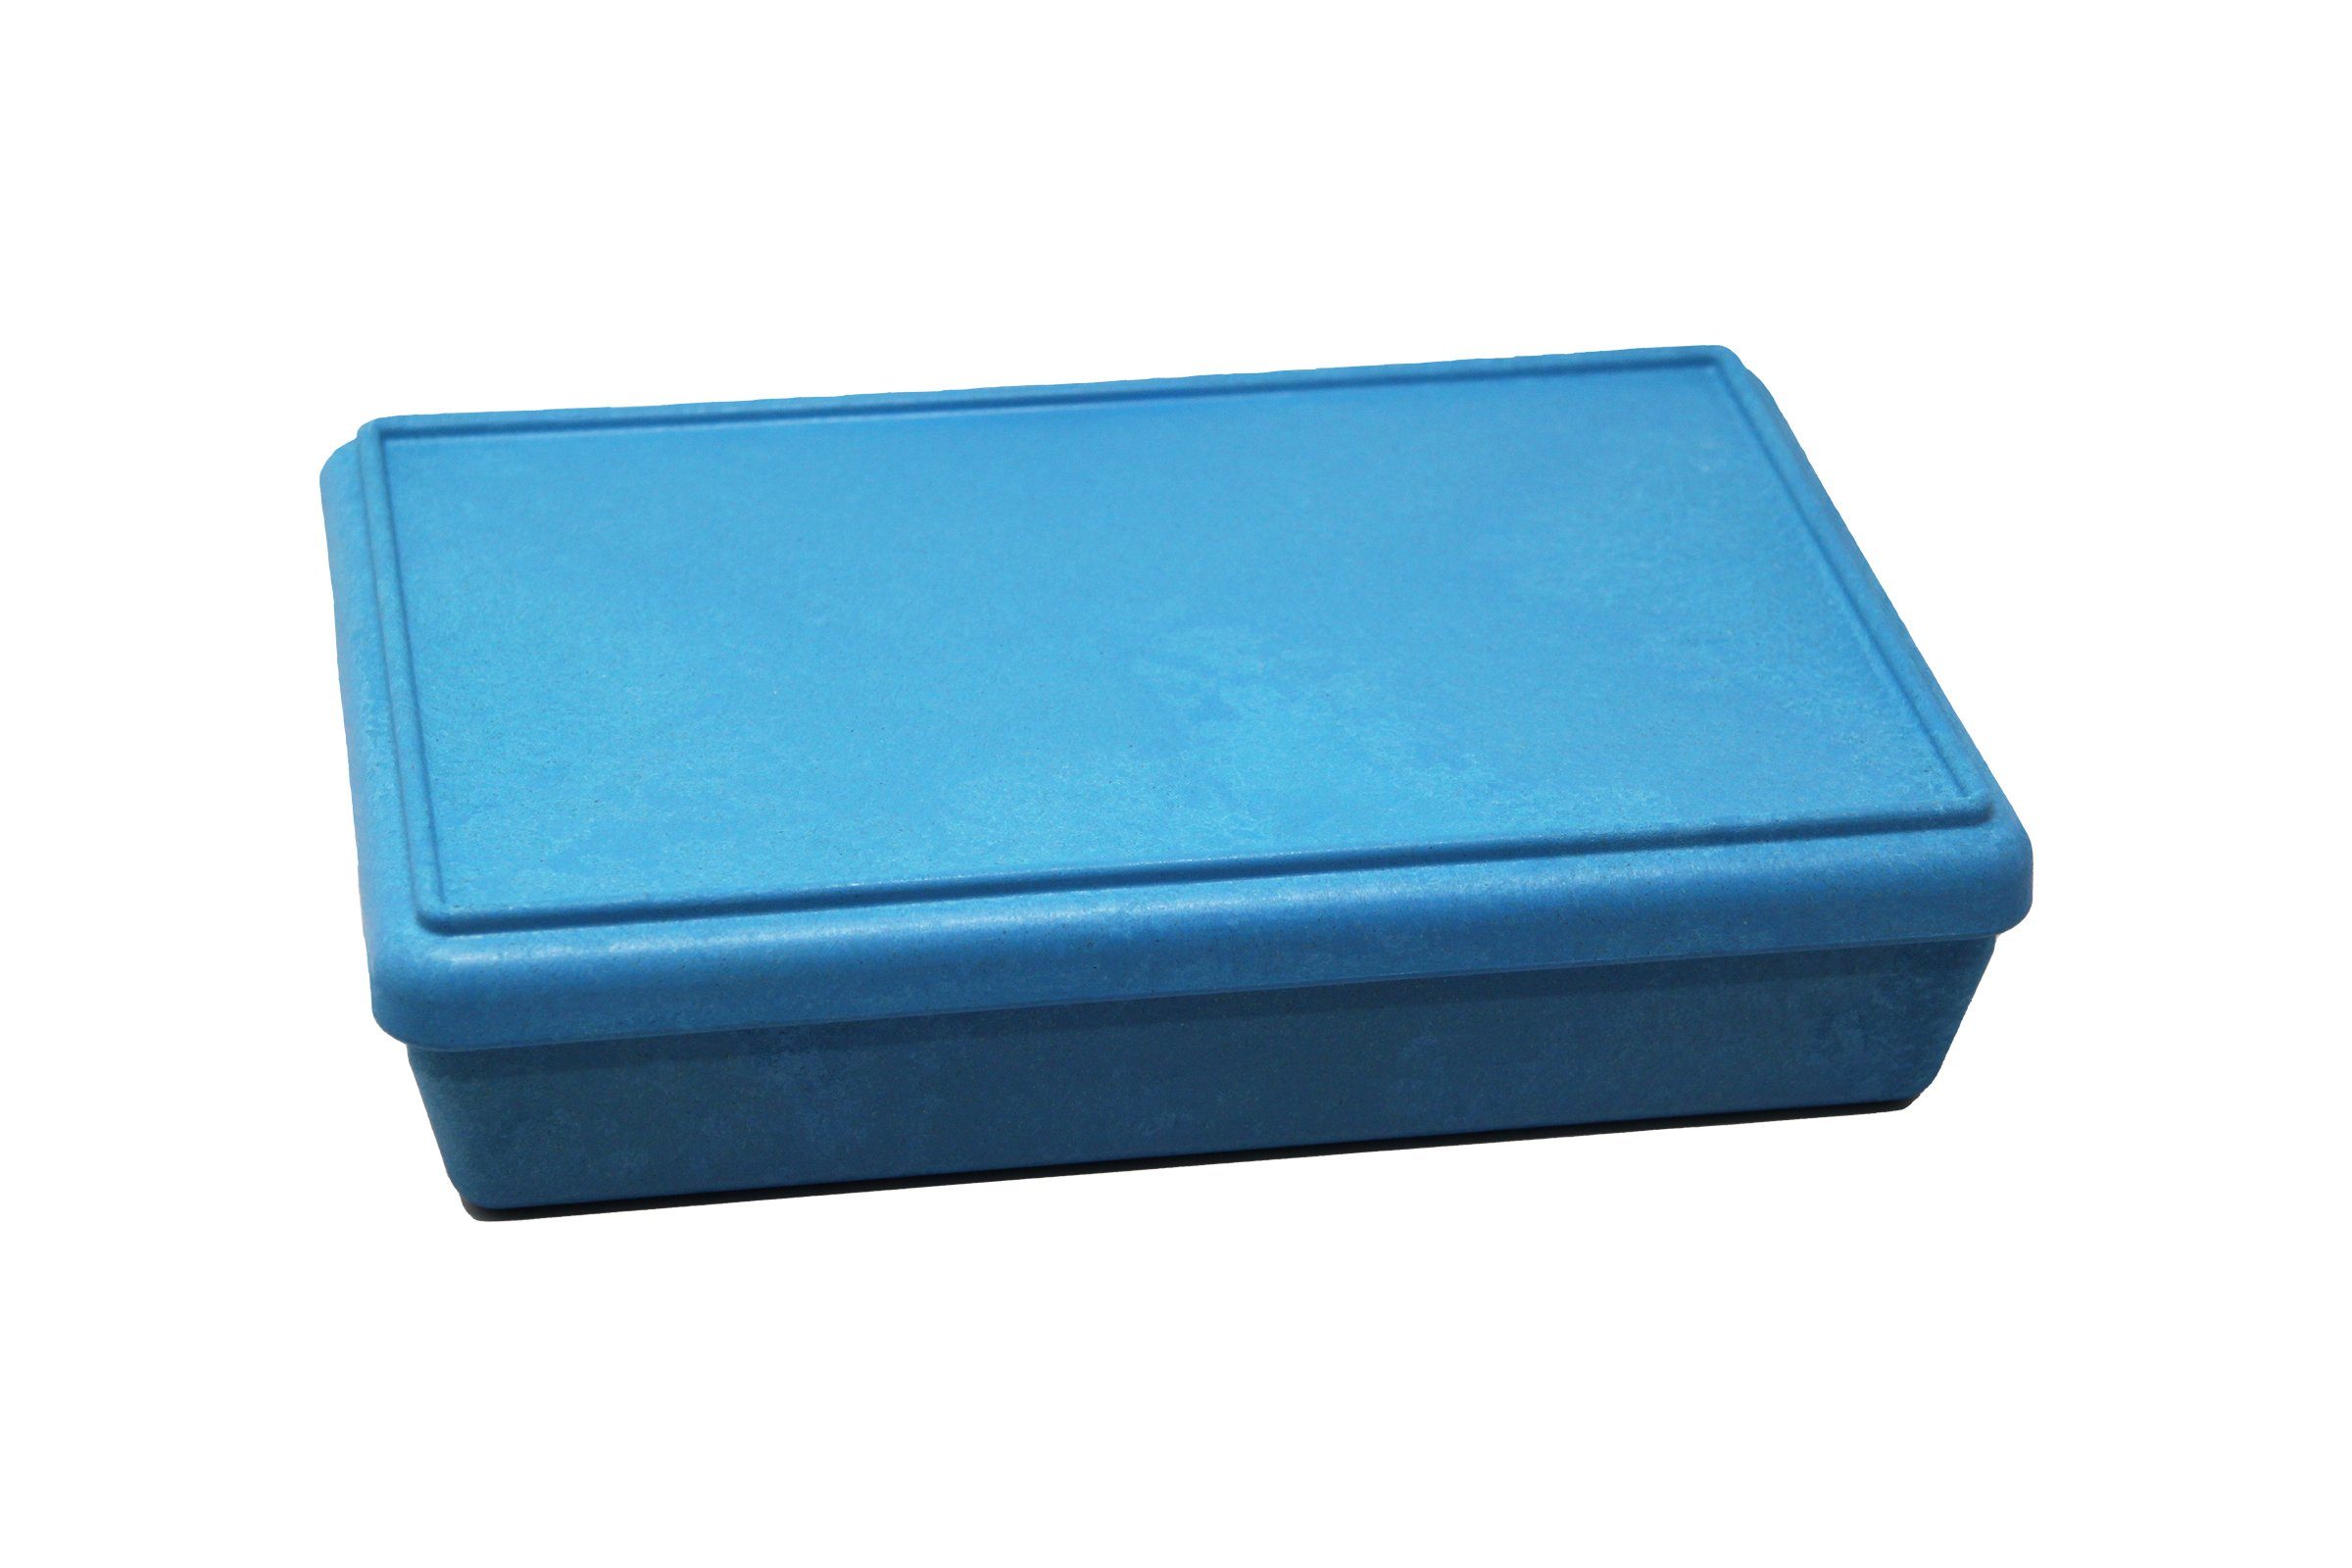 stapelbar Lernspielzeug blau mit Wissner® in Deckel Aufbewahren RE-Wood® Farben, versch. aktiv lernen Box